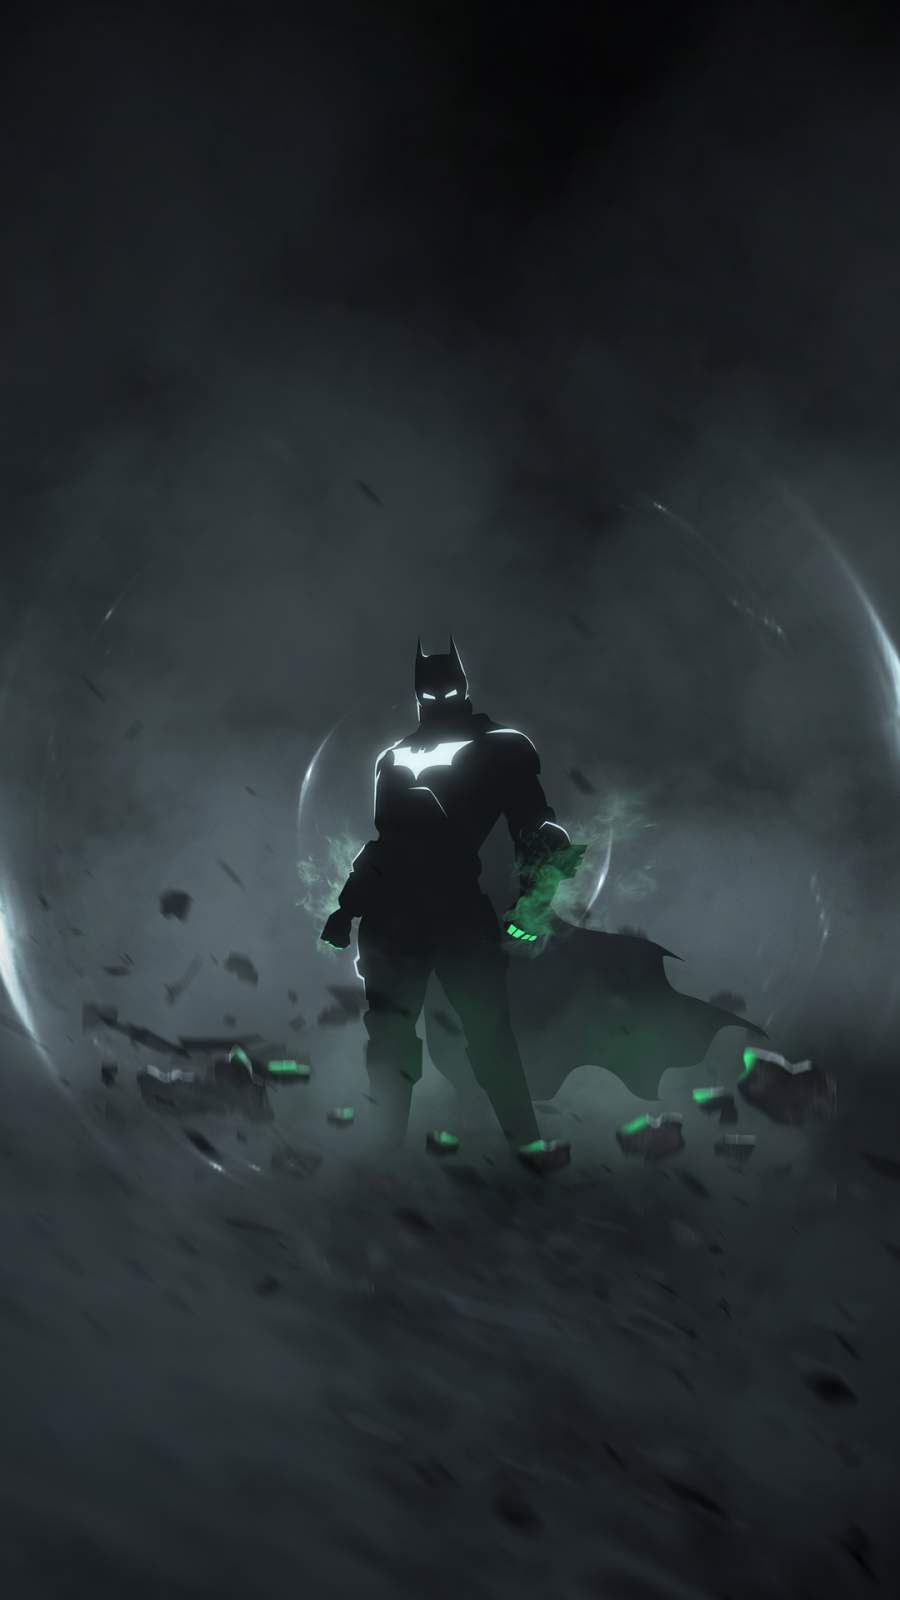 Batman 4K iPhone Wallpaper. Dc comics .com